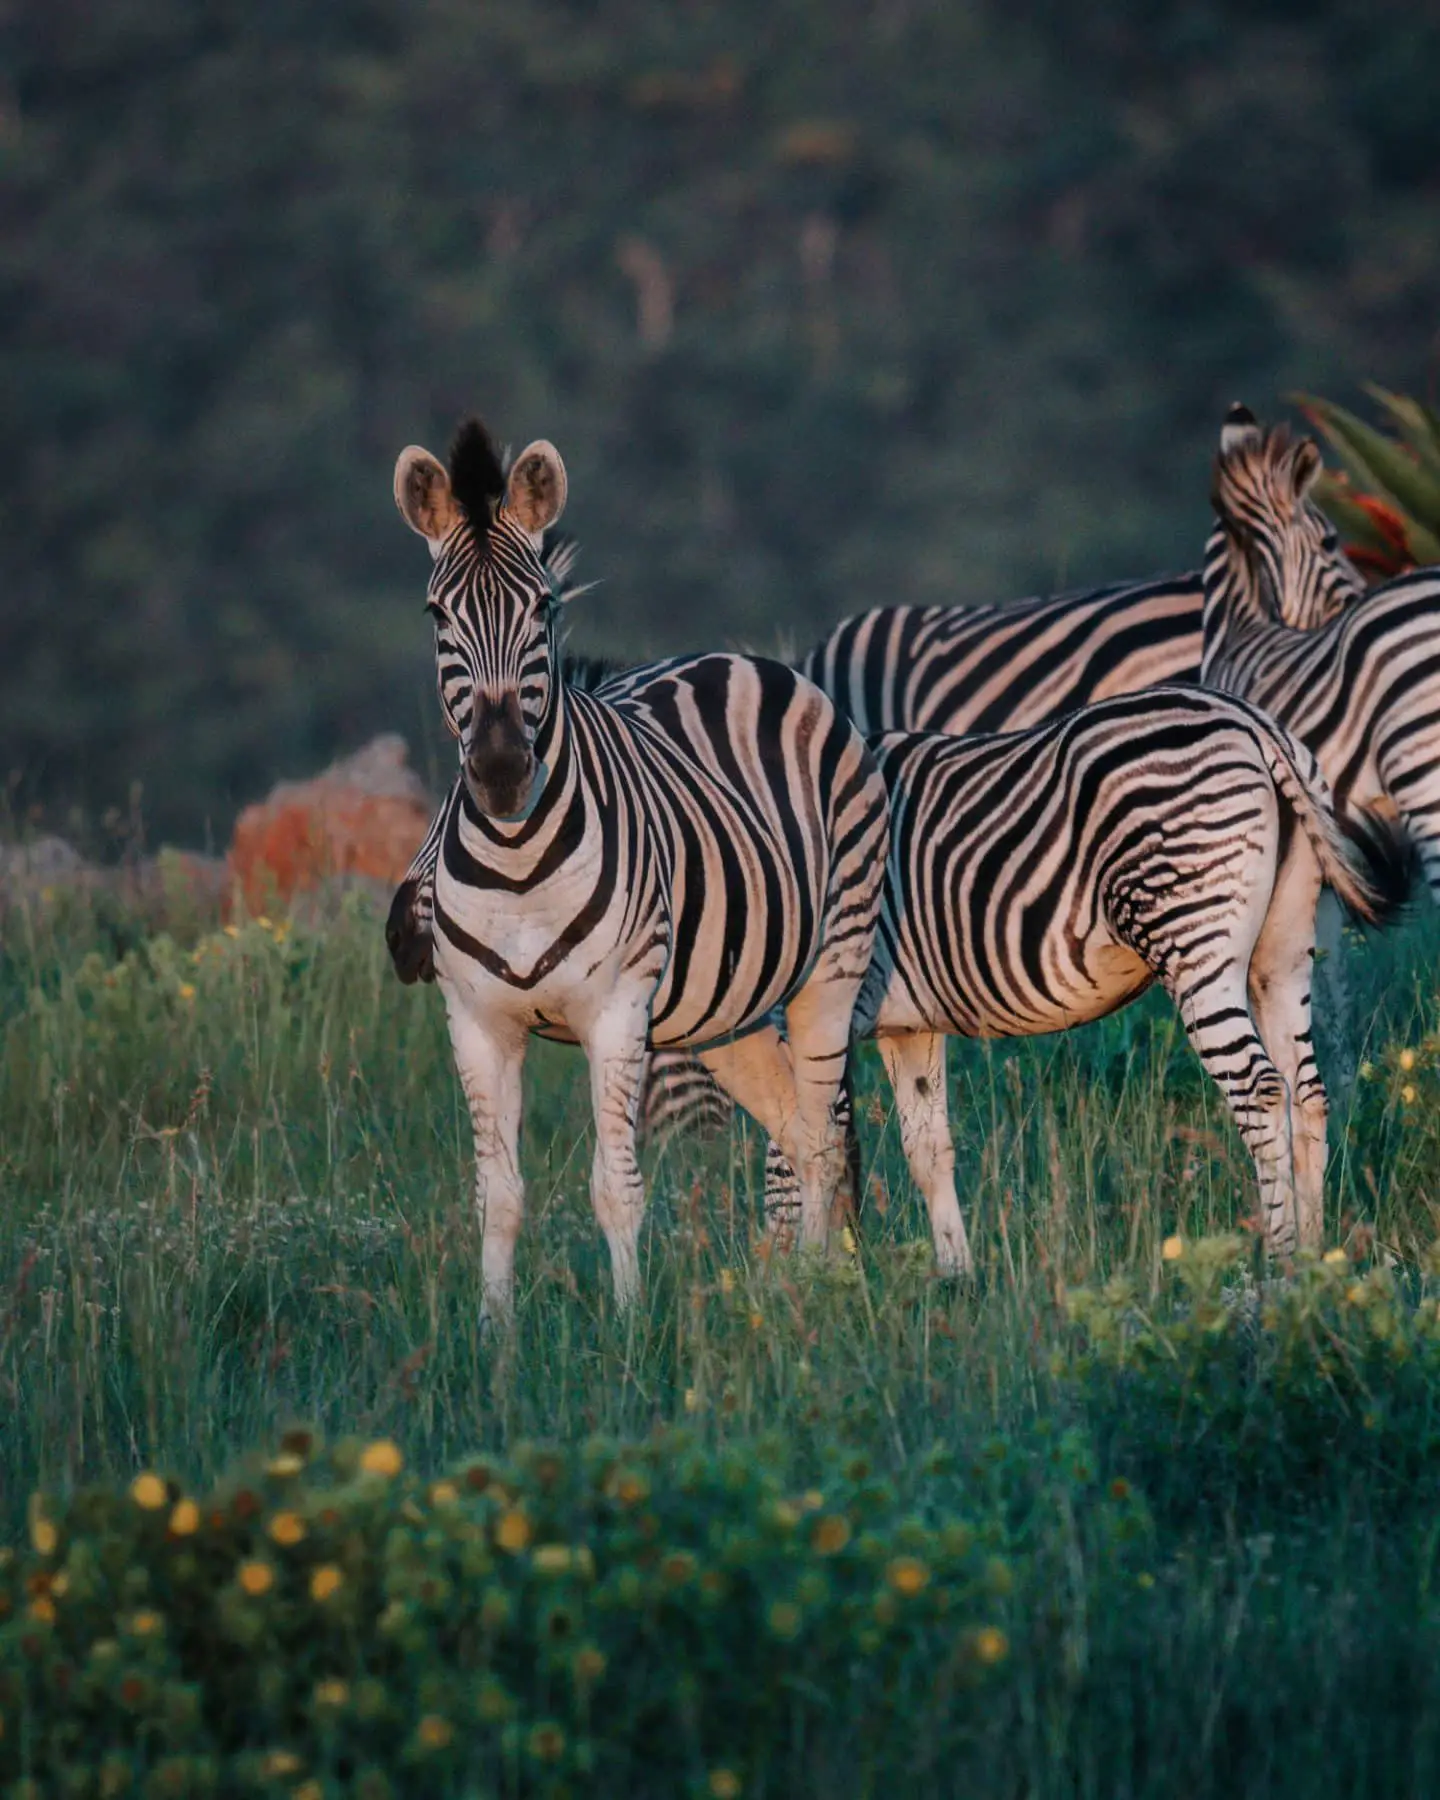 zebra at babanango game reserve in kzn